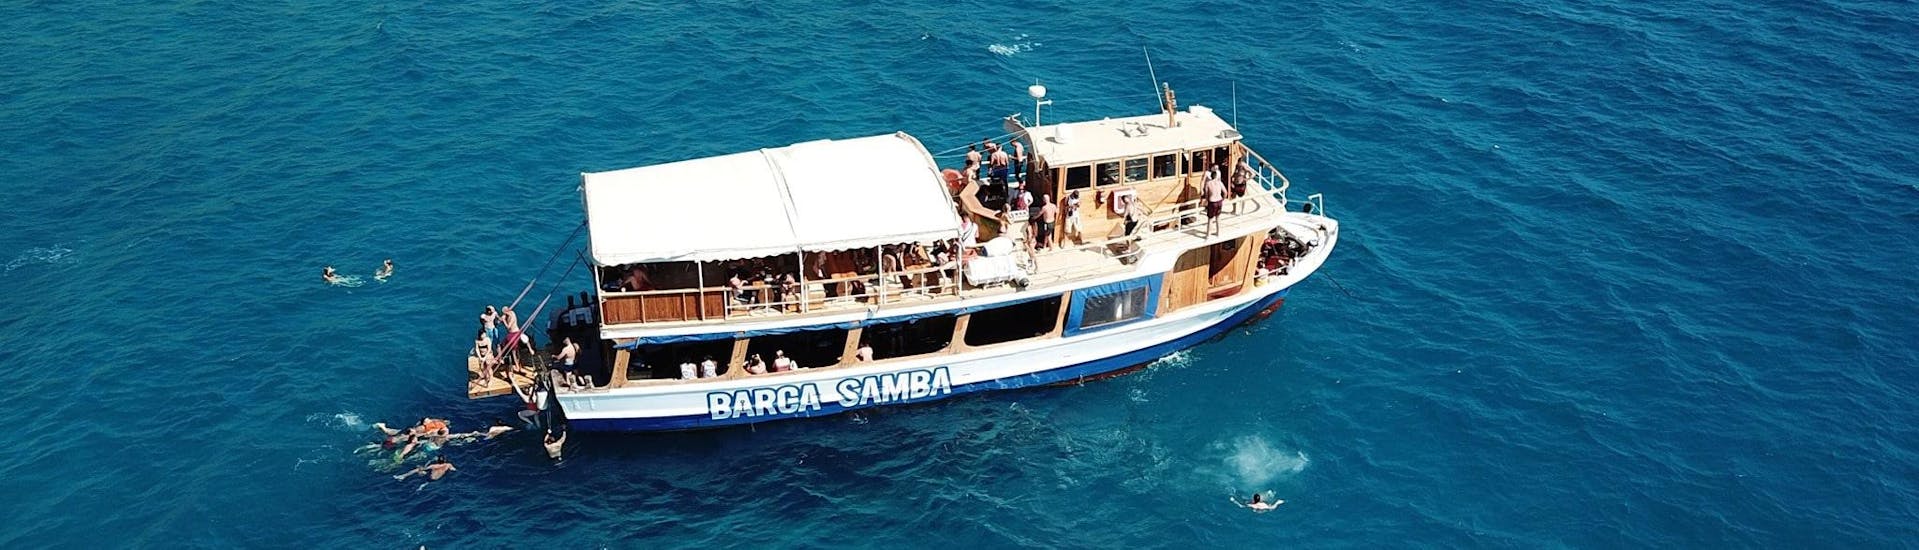 Eine Bootstour rund um Palma de Mallorca mit Barca Samba.